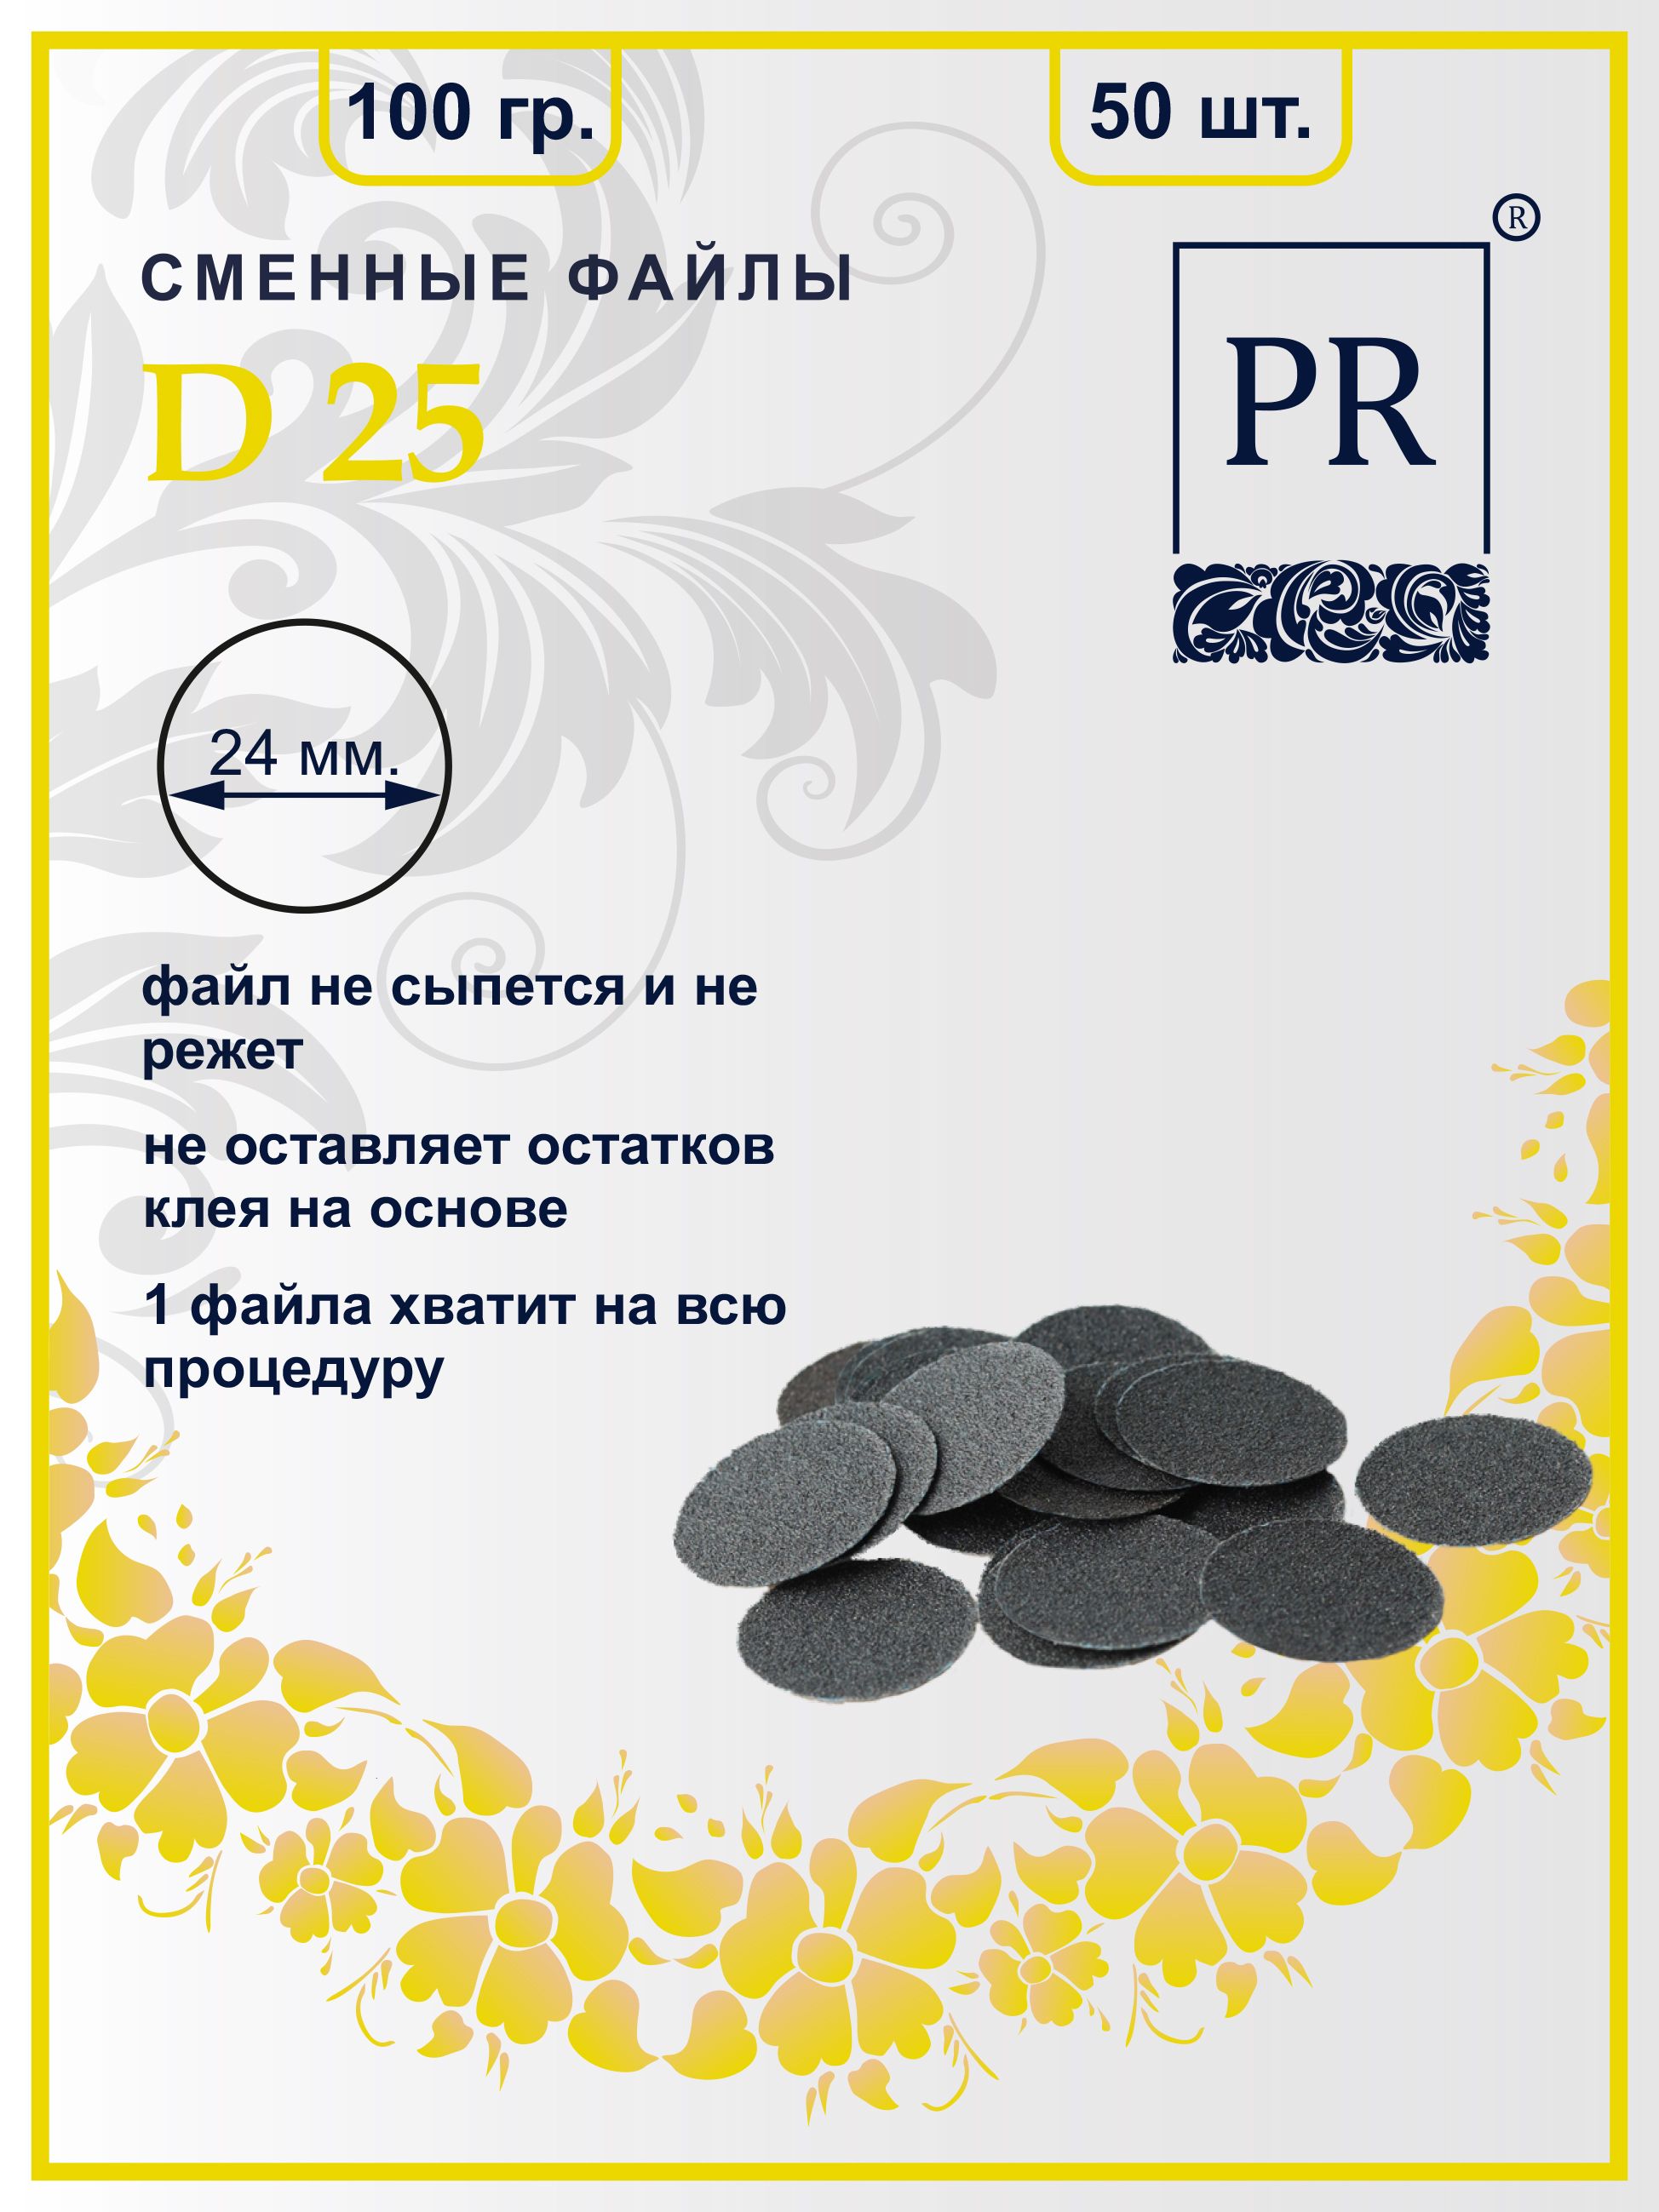 Сменные файлы Pilochki Russia диски для педикюра для диска L 100 грит 50 штук illustrated timeline medieval russia 839 1462